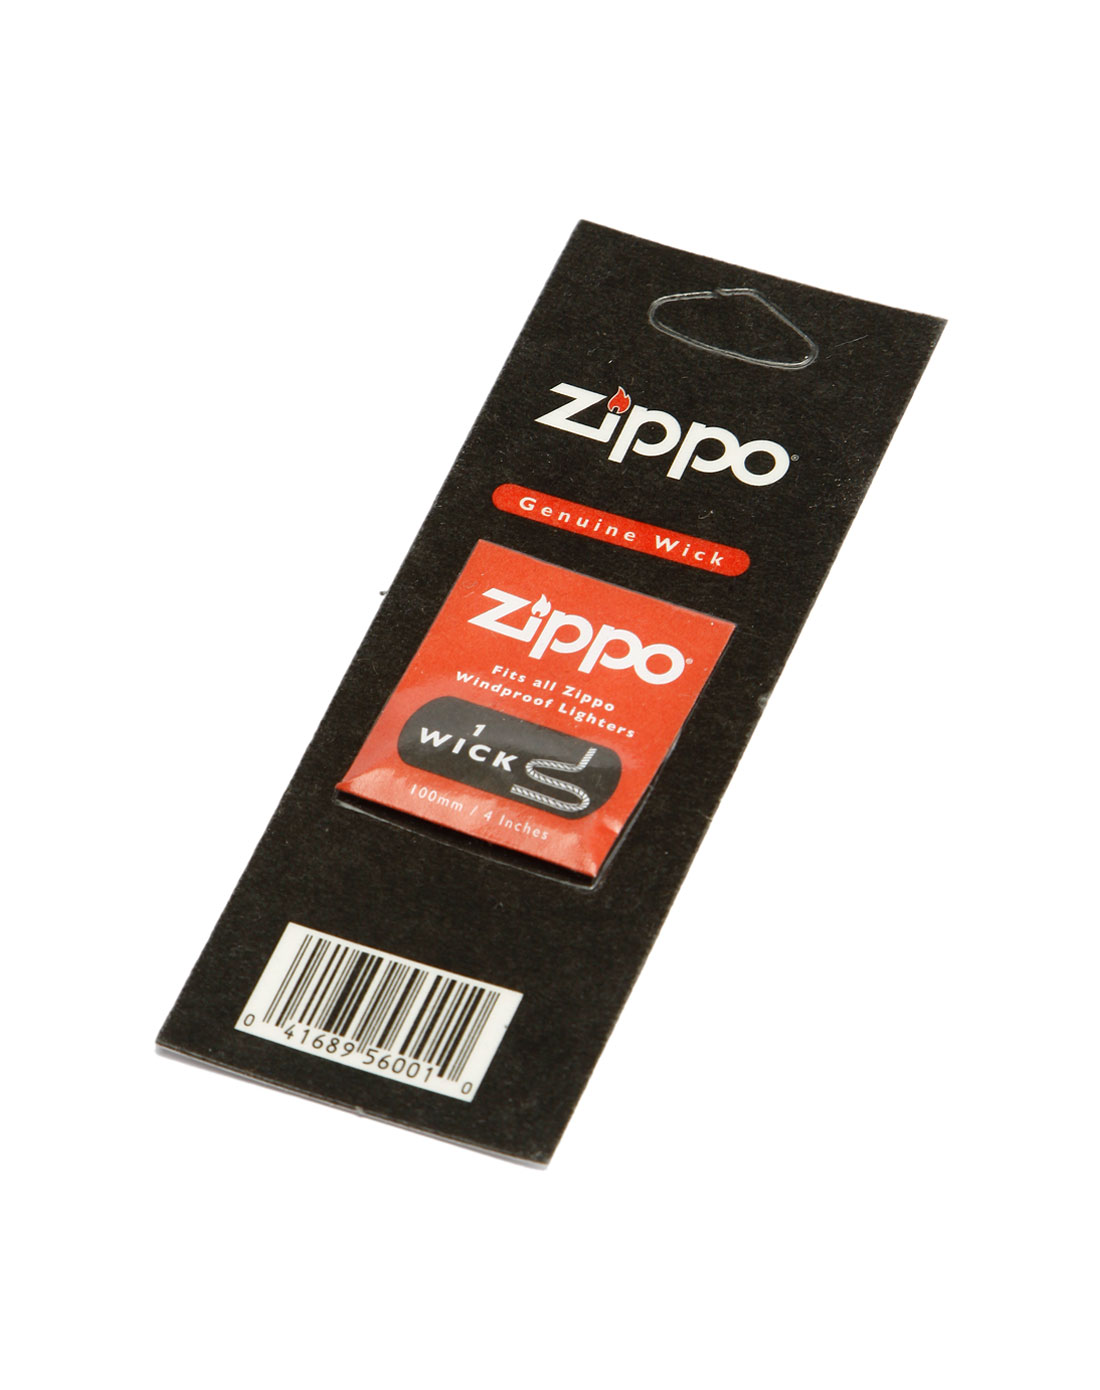 芝宝zippo专用棉芯